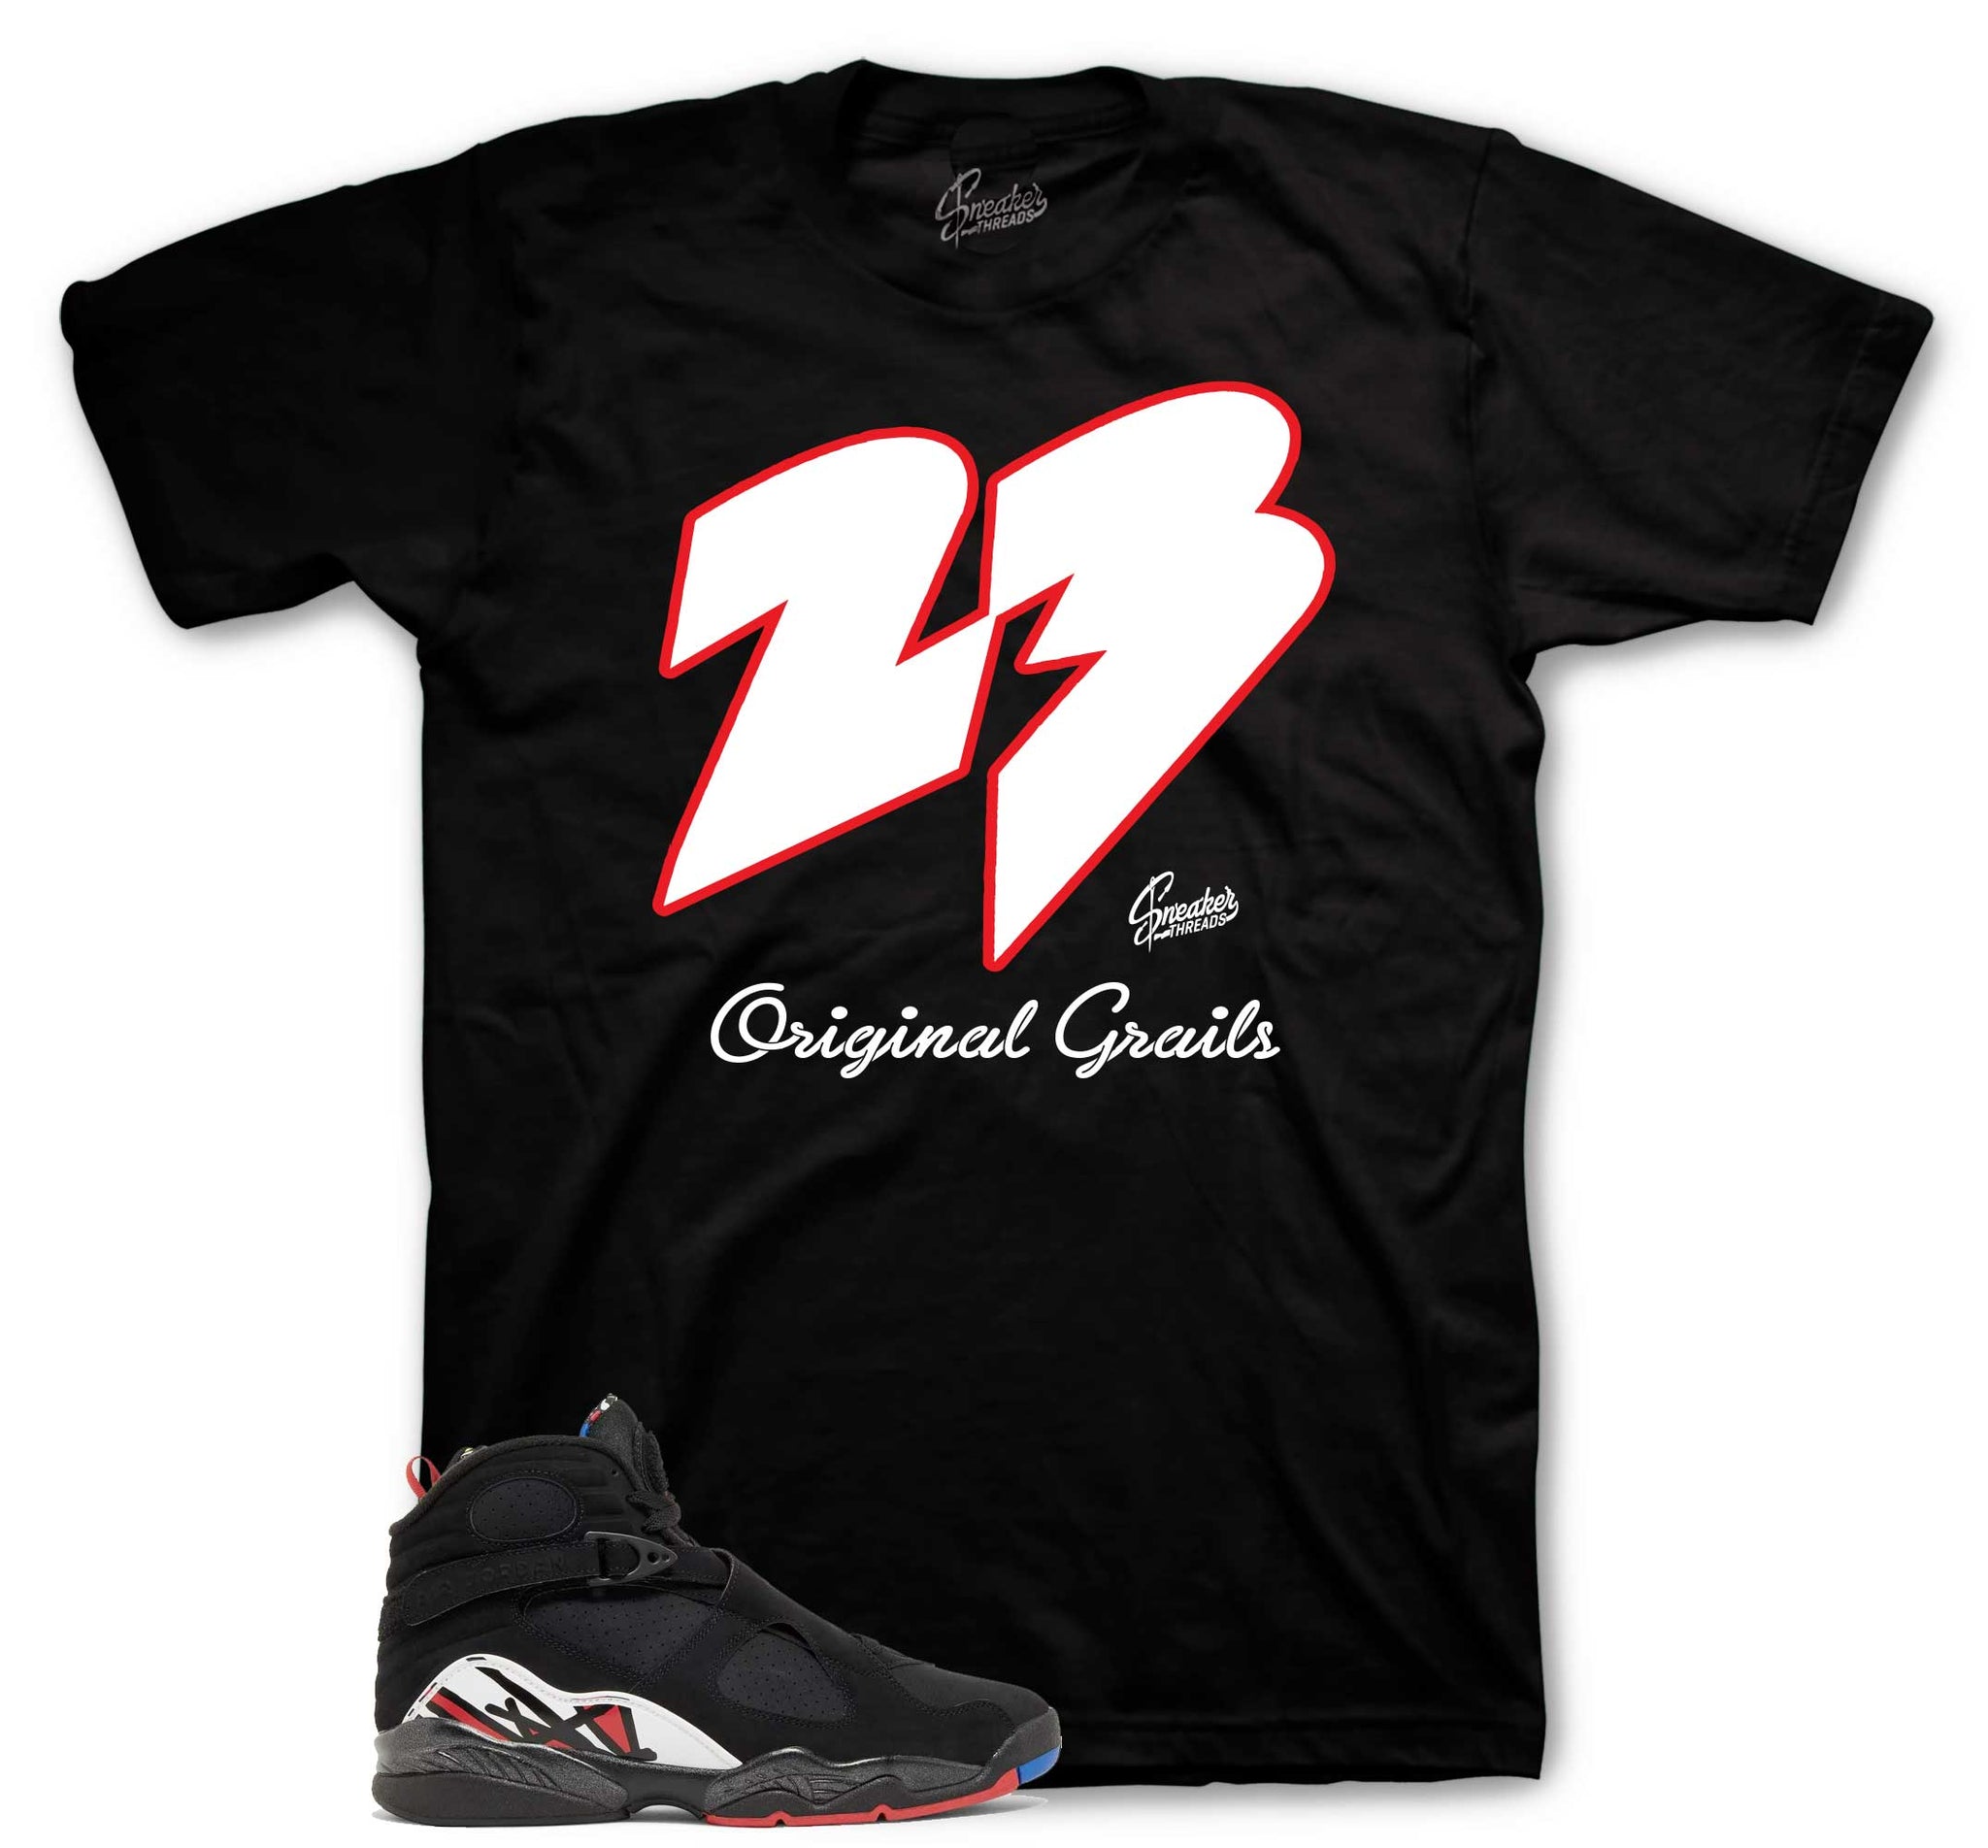 Retro 8 Playoffs Shirt - Original Grails - Black